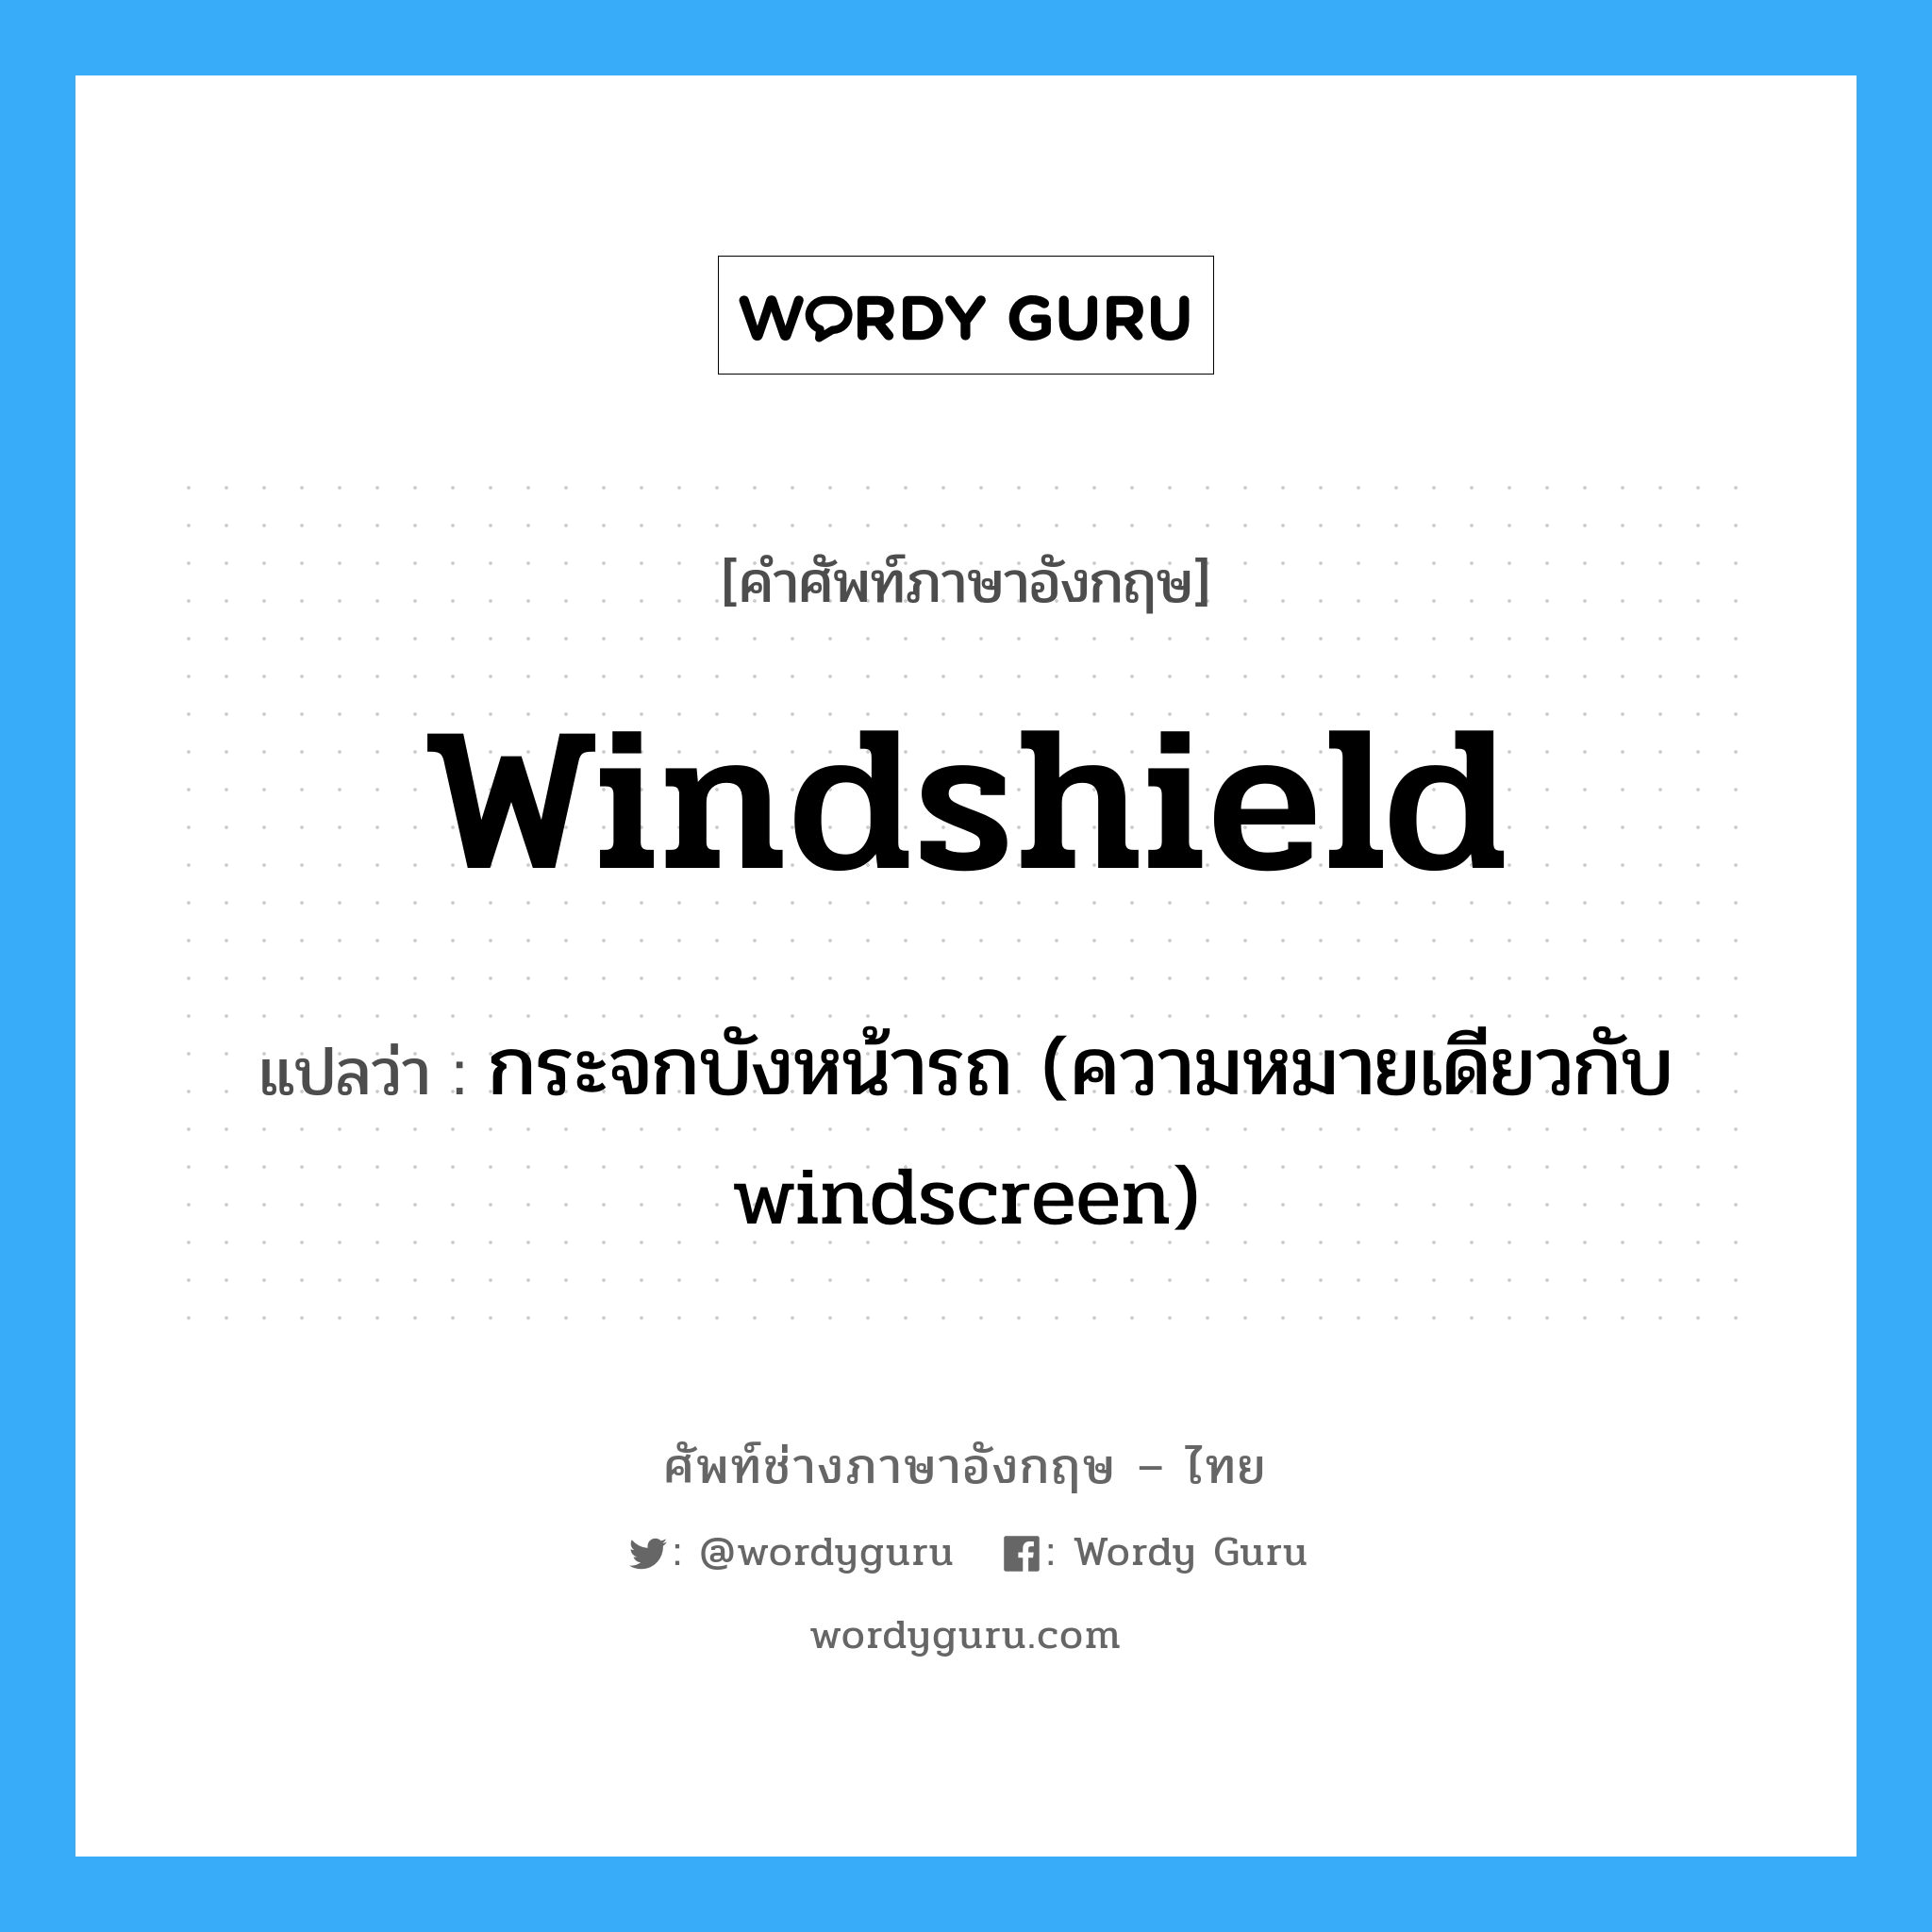 windshield แปลว่า?, คำศัพท์ช่างภาษาอังกฤษ - ไทย windshield คำศัพท์ภาษาอังกฤษ windshield แปลว่า กระจกบังหน้ารถ (ความหมายเดียวกับ windscreen)